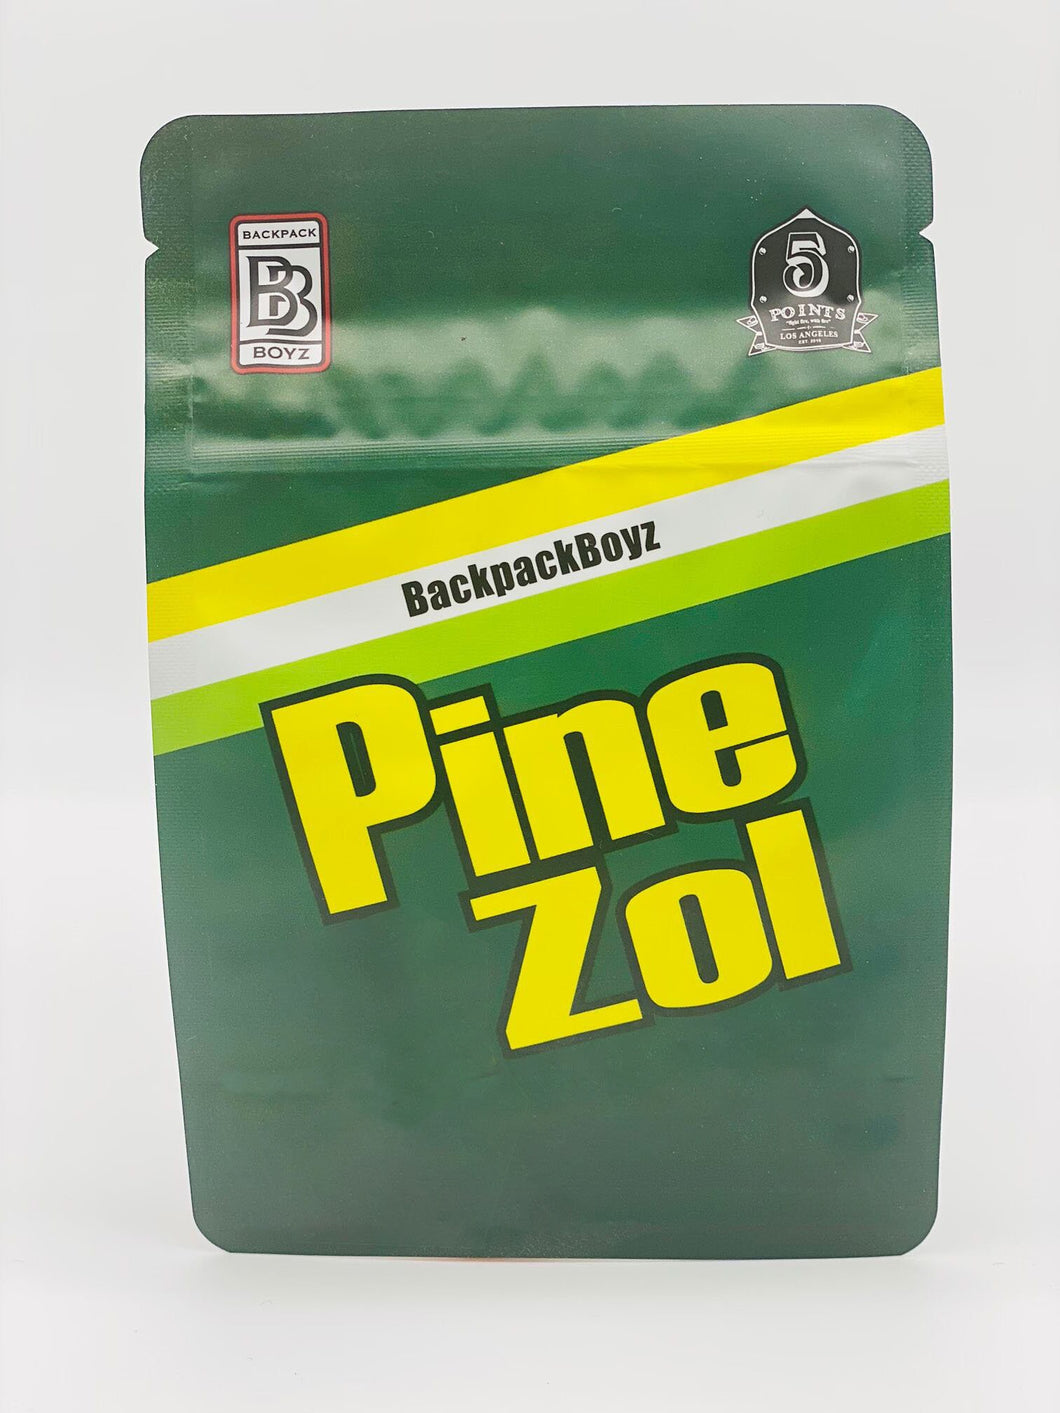 50 Pine Zol 3.5 gram empty Mylar bags